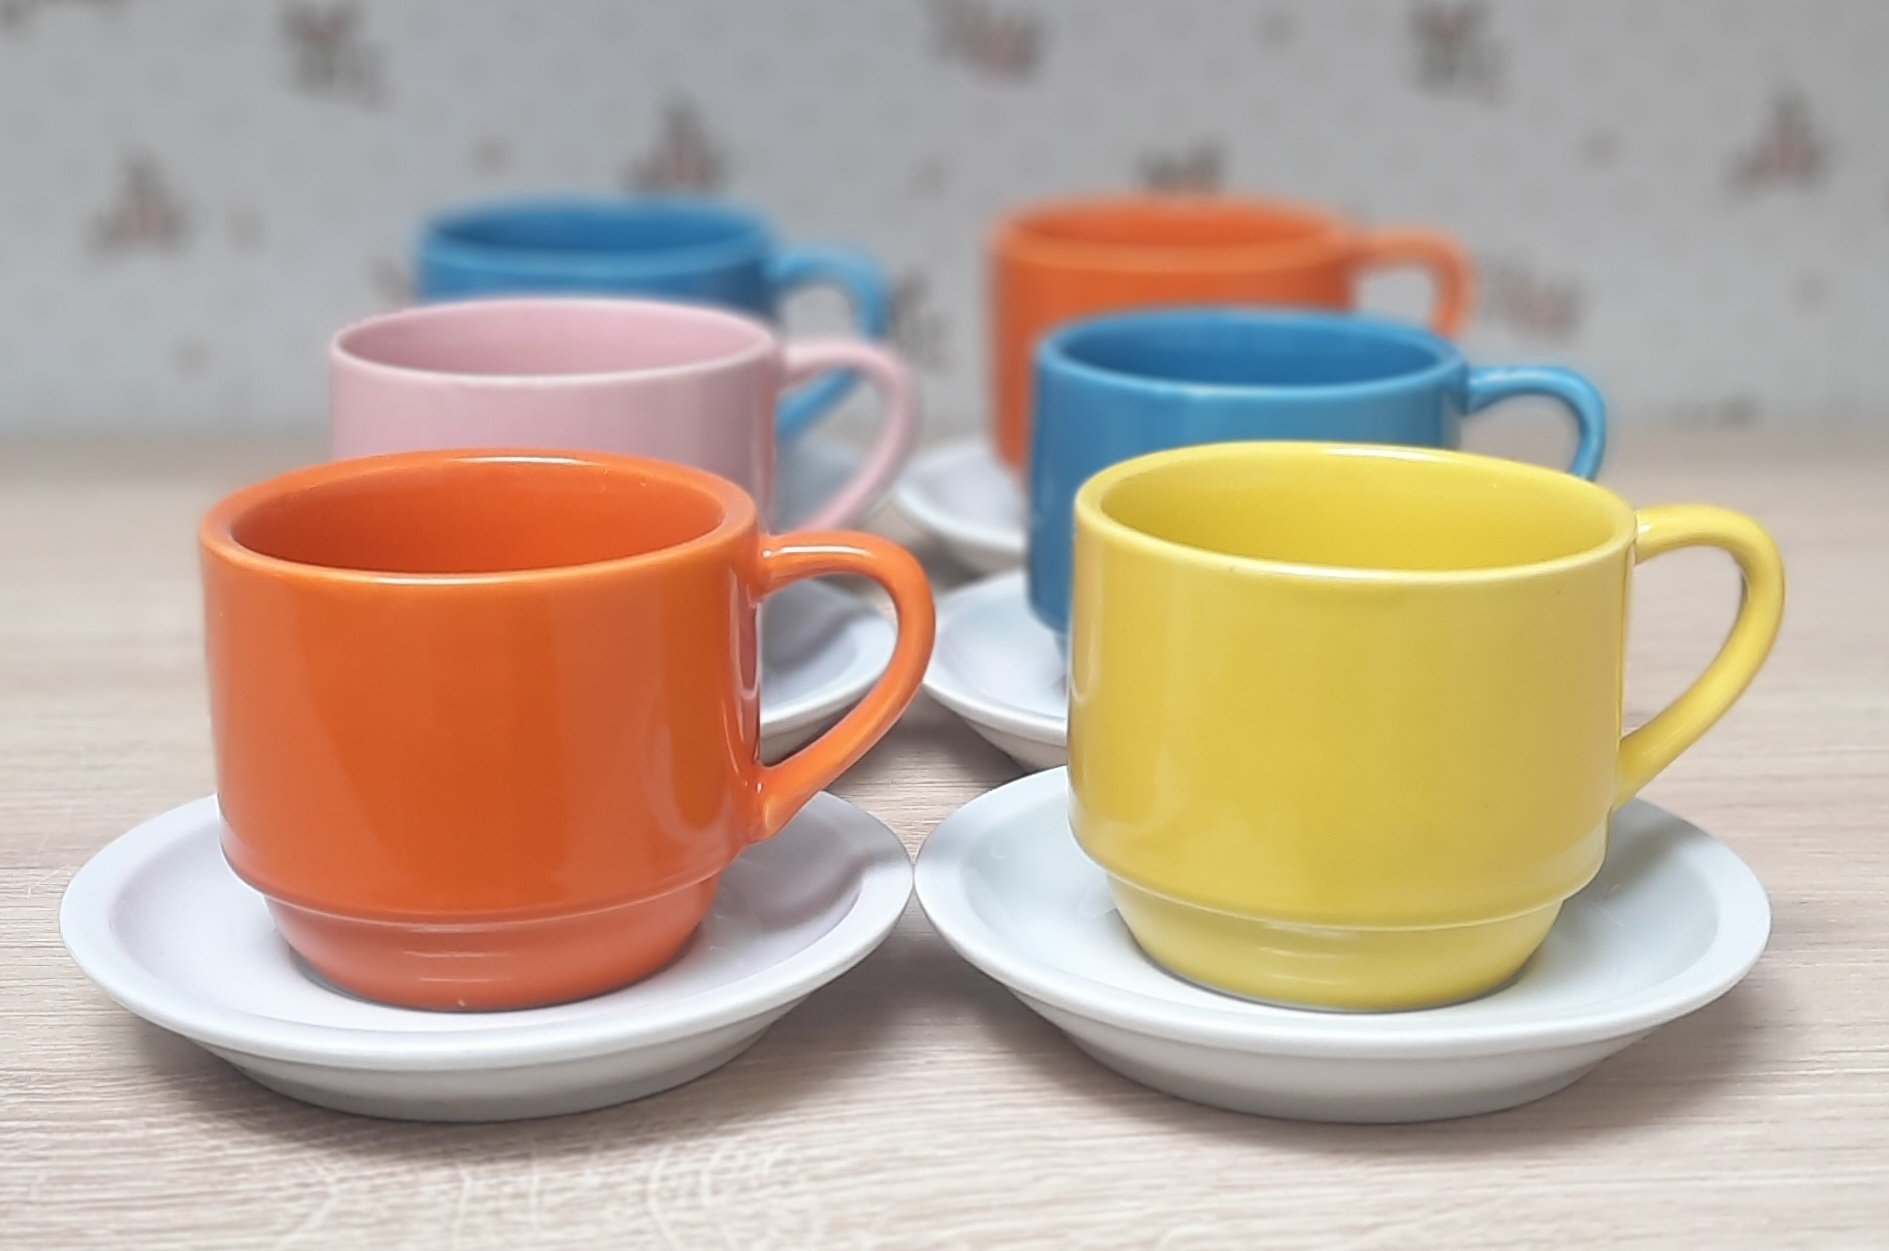 Jogo 6 xícaras de Café e Chá com pires - 200 ml Empilháveis - Porcelana Colorida - 2